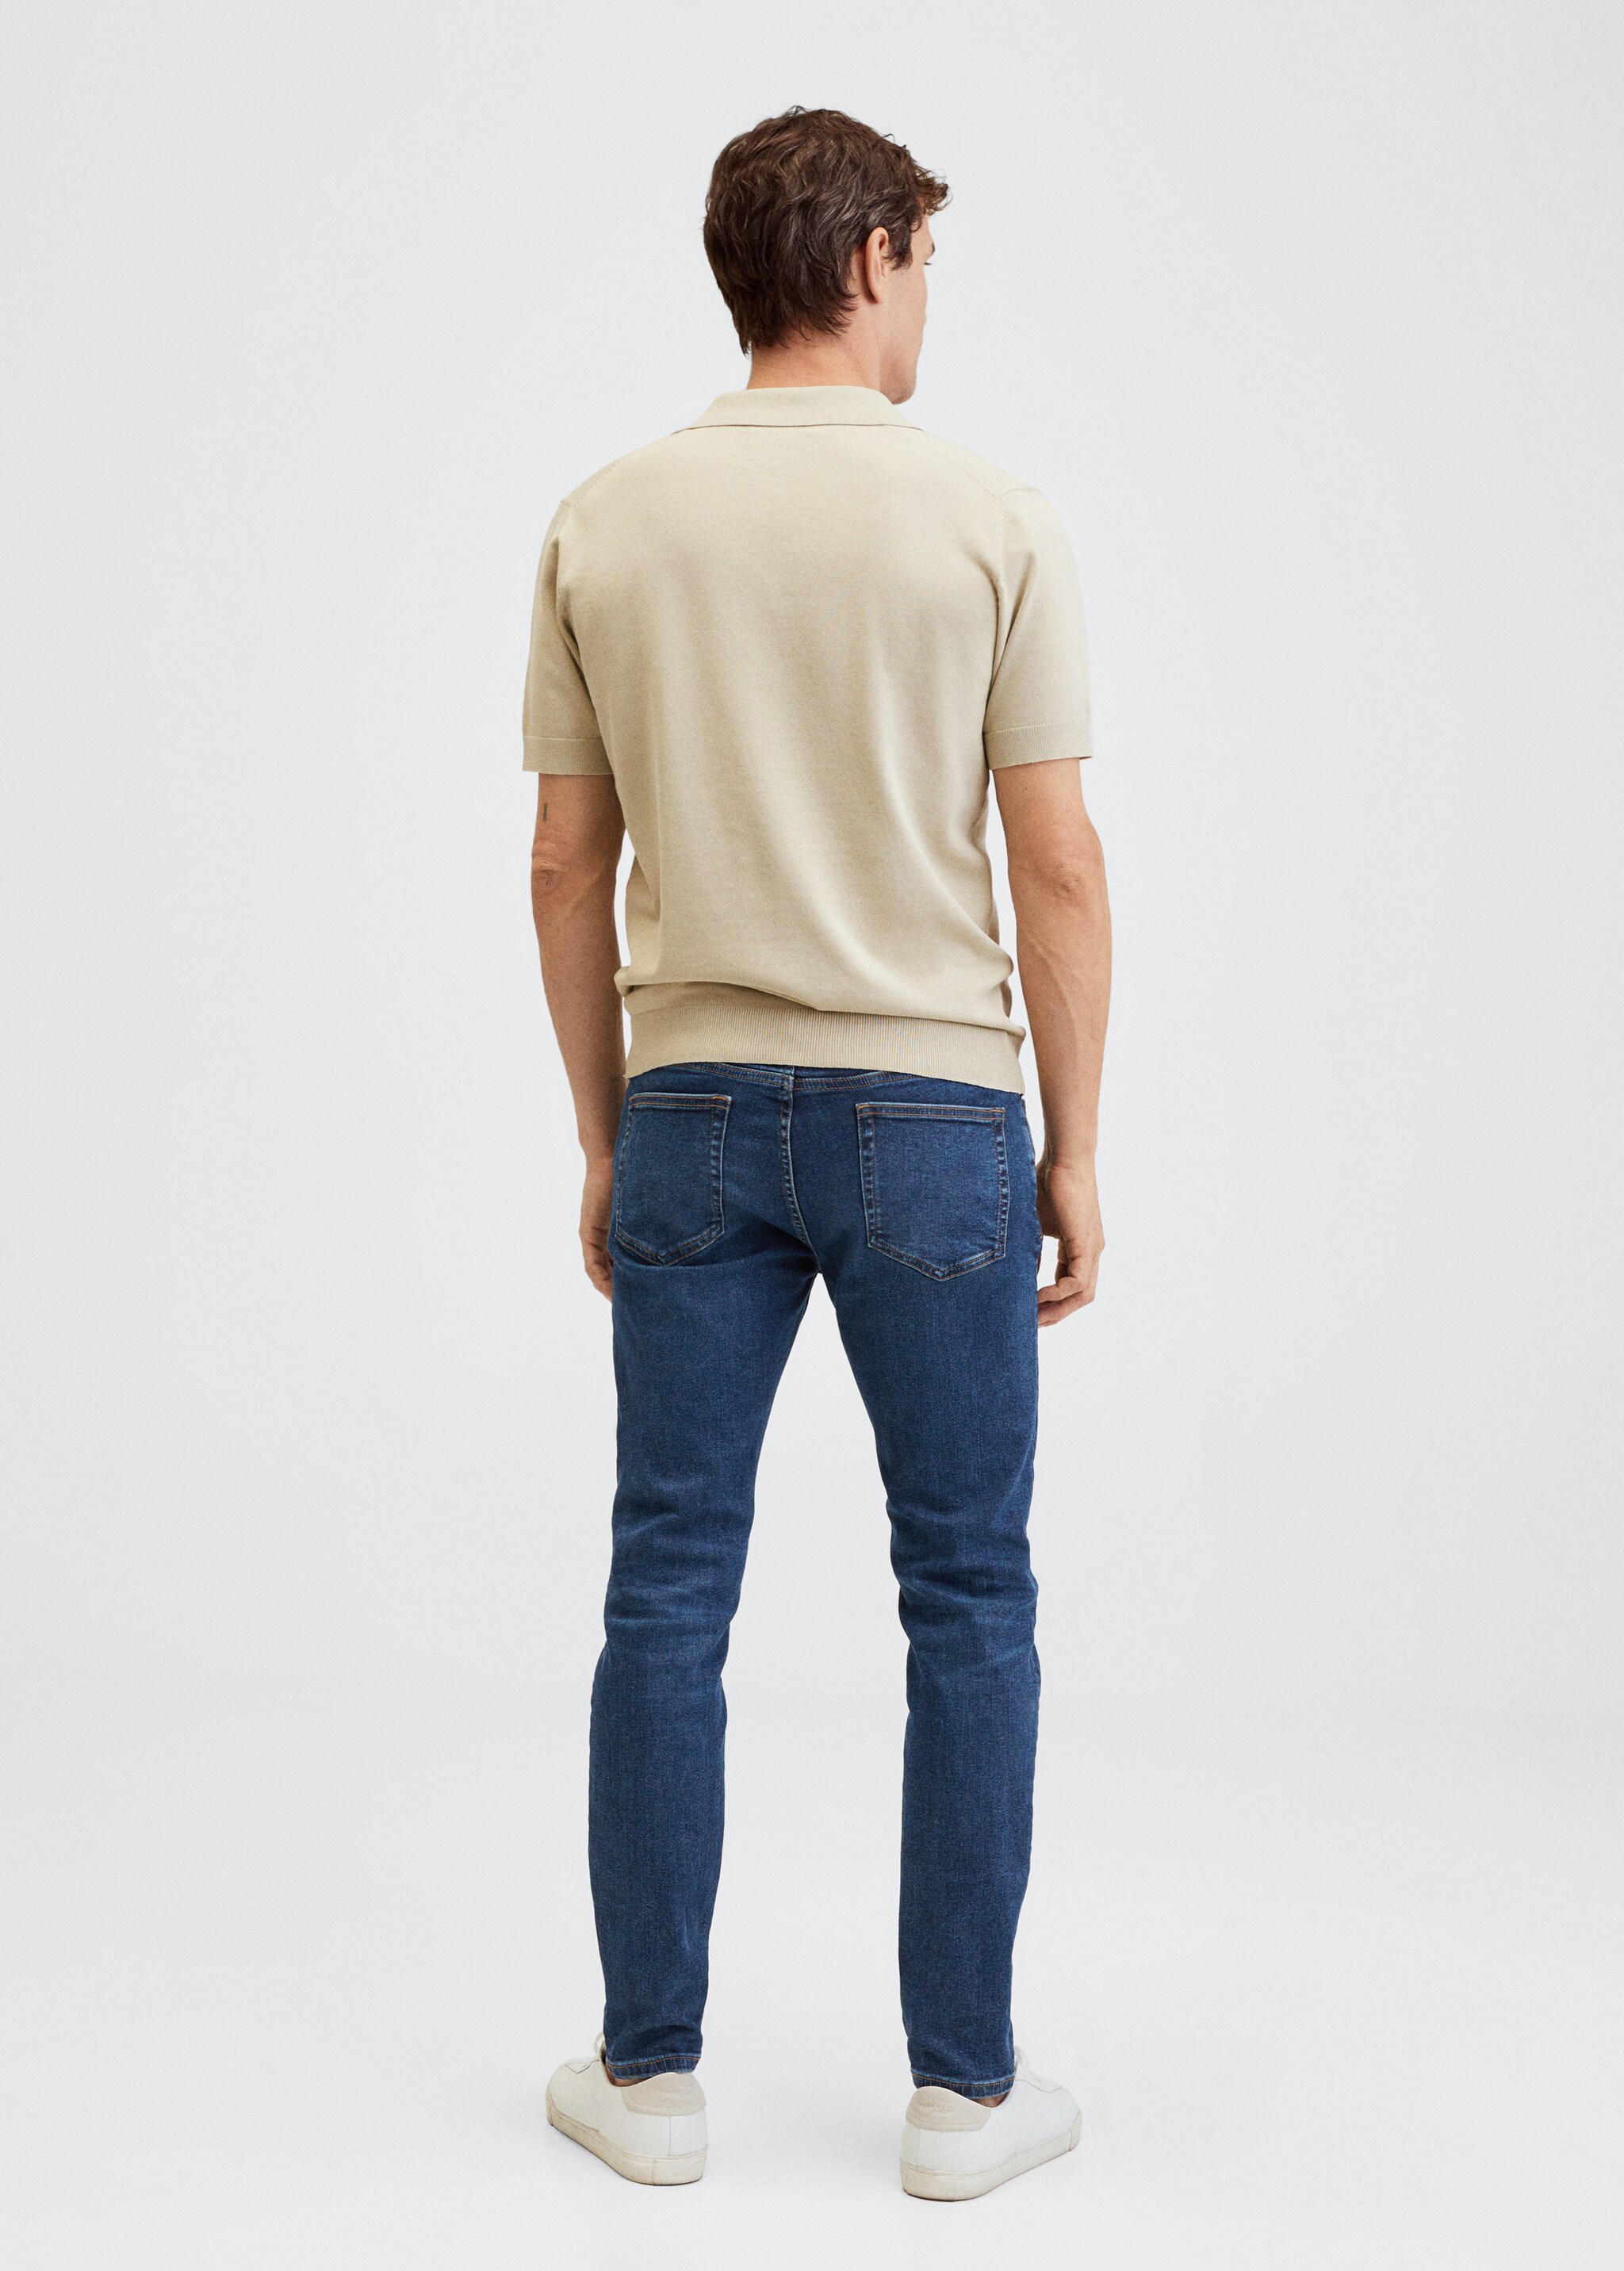 Jeans Jude skinny lavado oscuro - Reverso del artículo